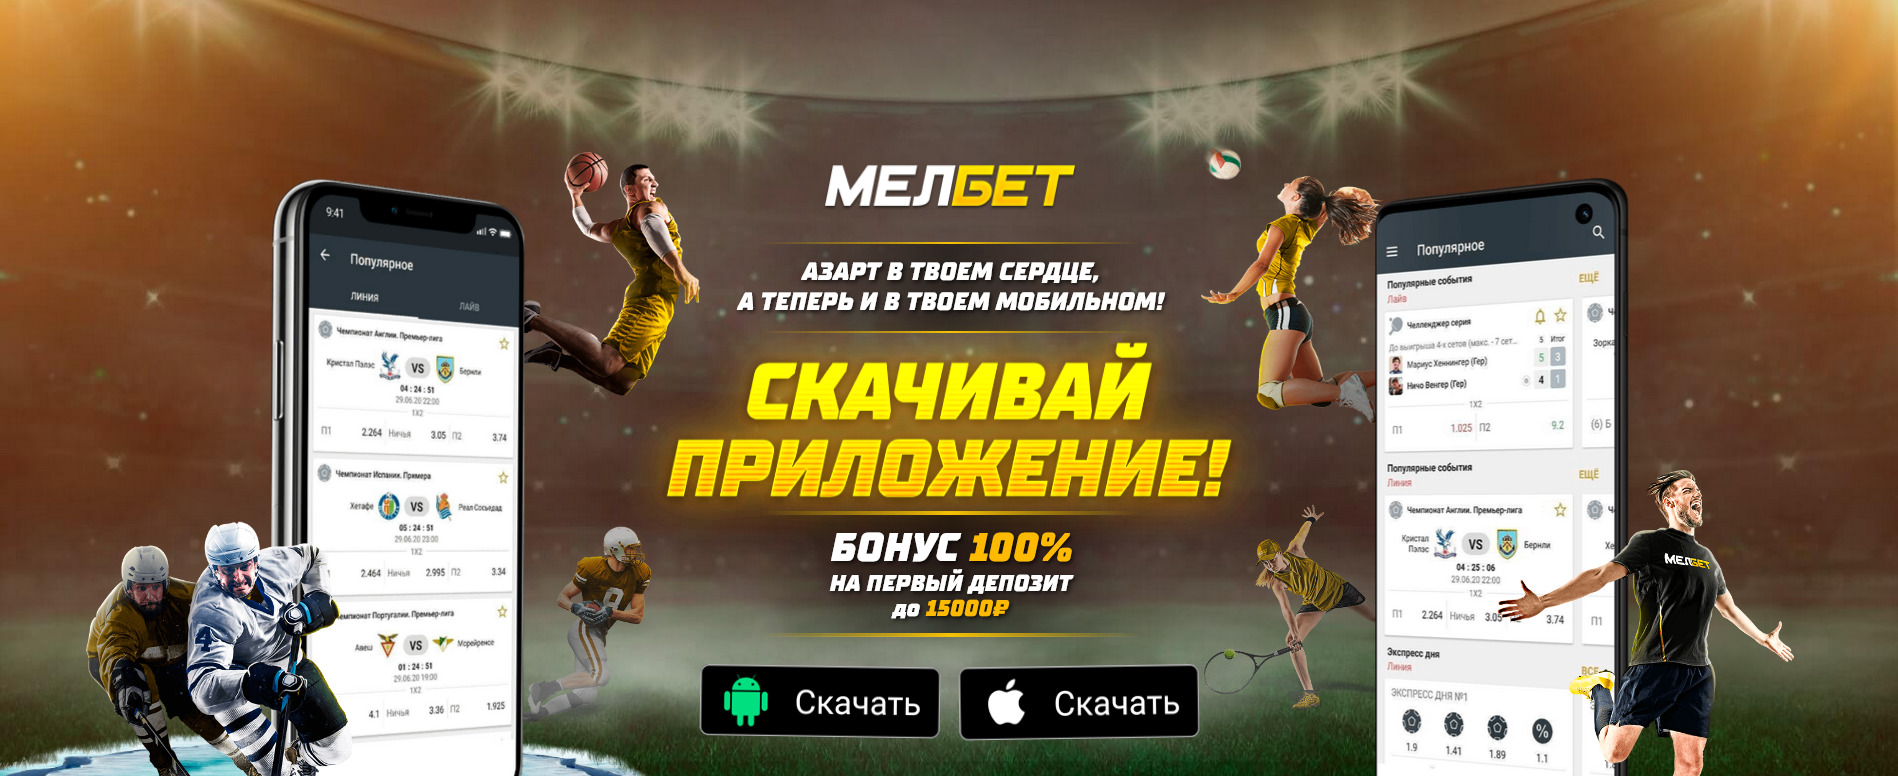 Мелбет ставки на спорт онлайн игровые автоматы 777 бесплатно все автоматы